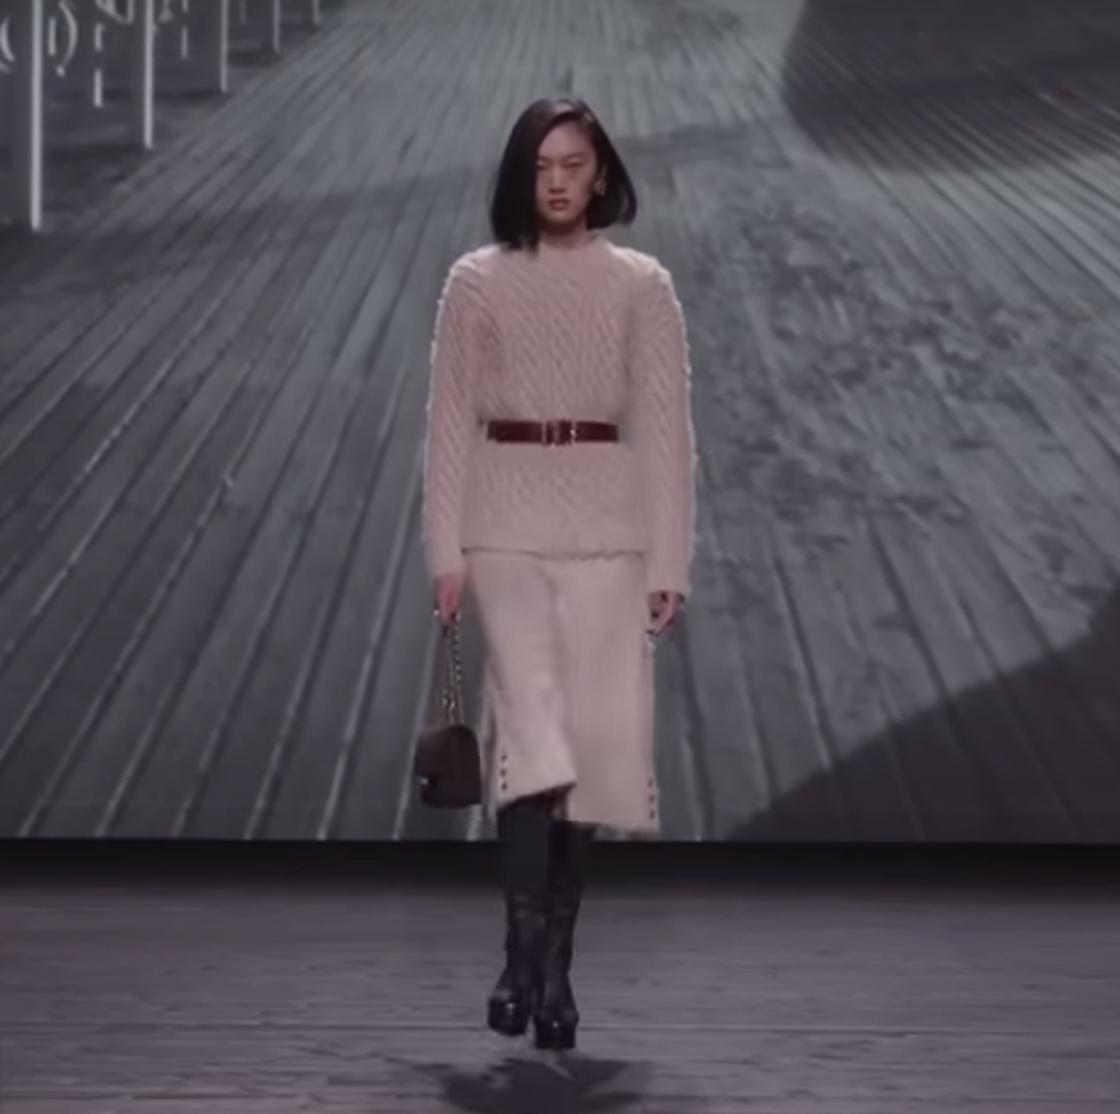 Модель демонстрирует свитер и юбка с поясом на талии от Chanel